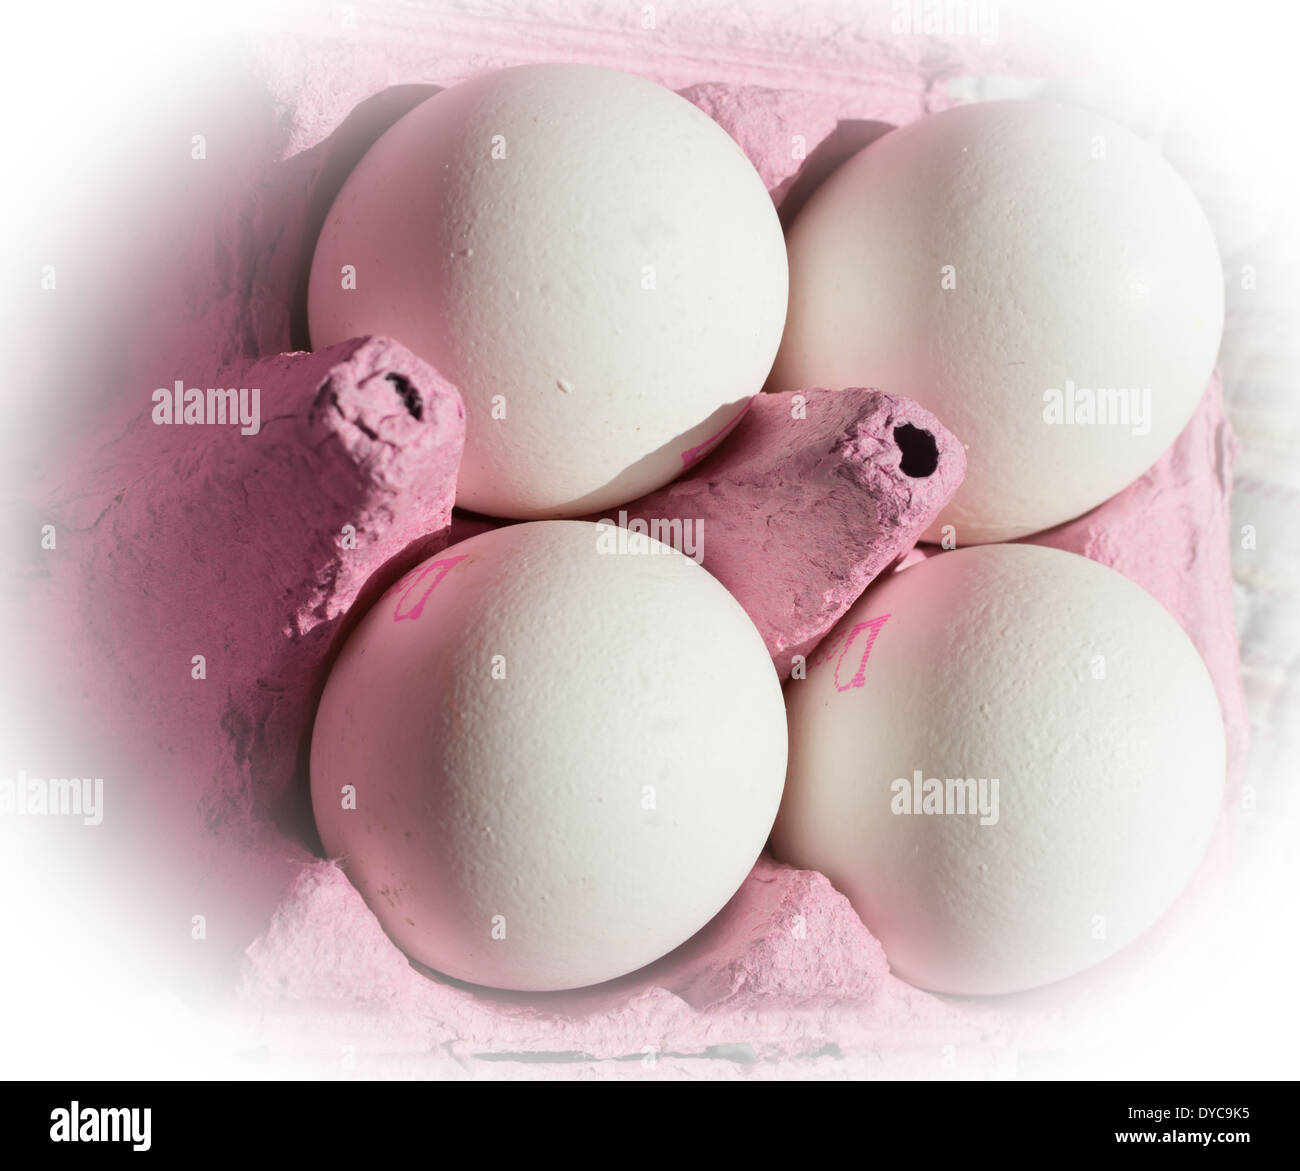 4 weißen Eiern, Stempel sichtbar, in rosa Karton ausblenden in weiß. Stockfoto